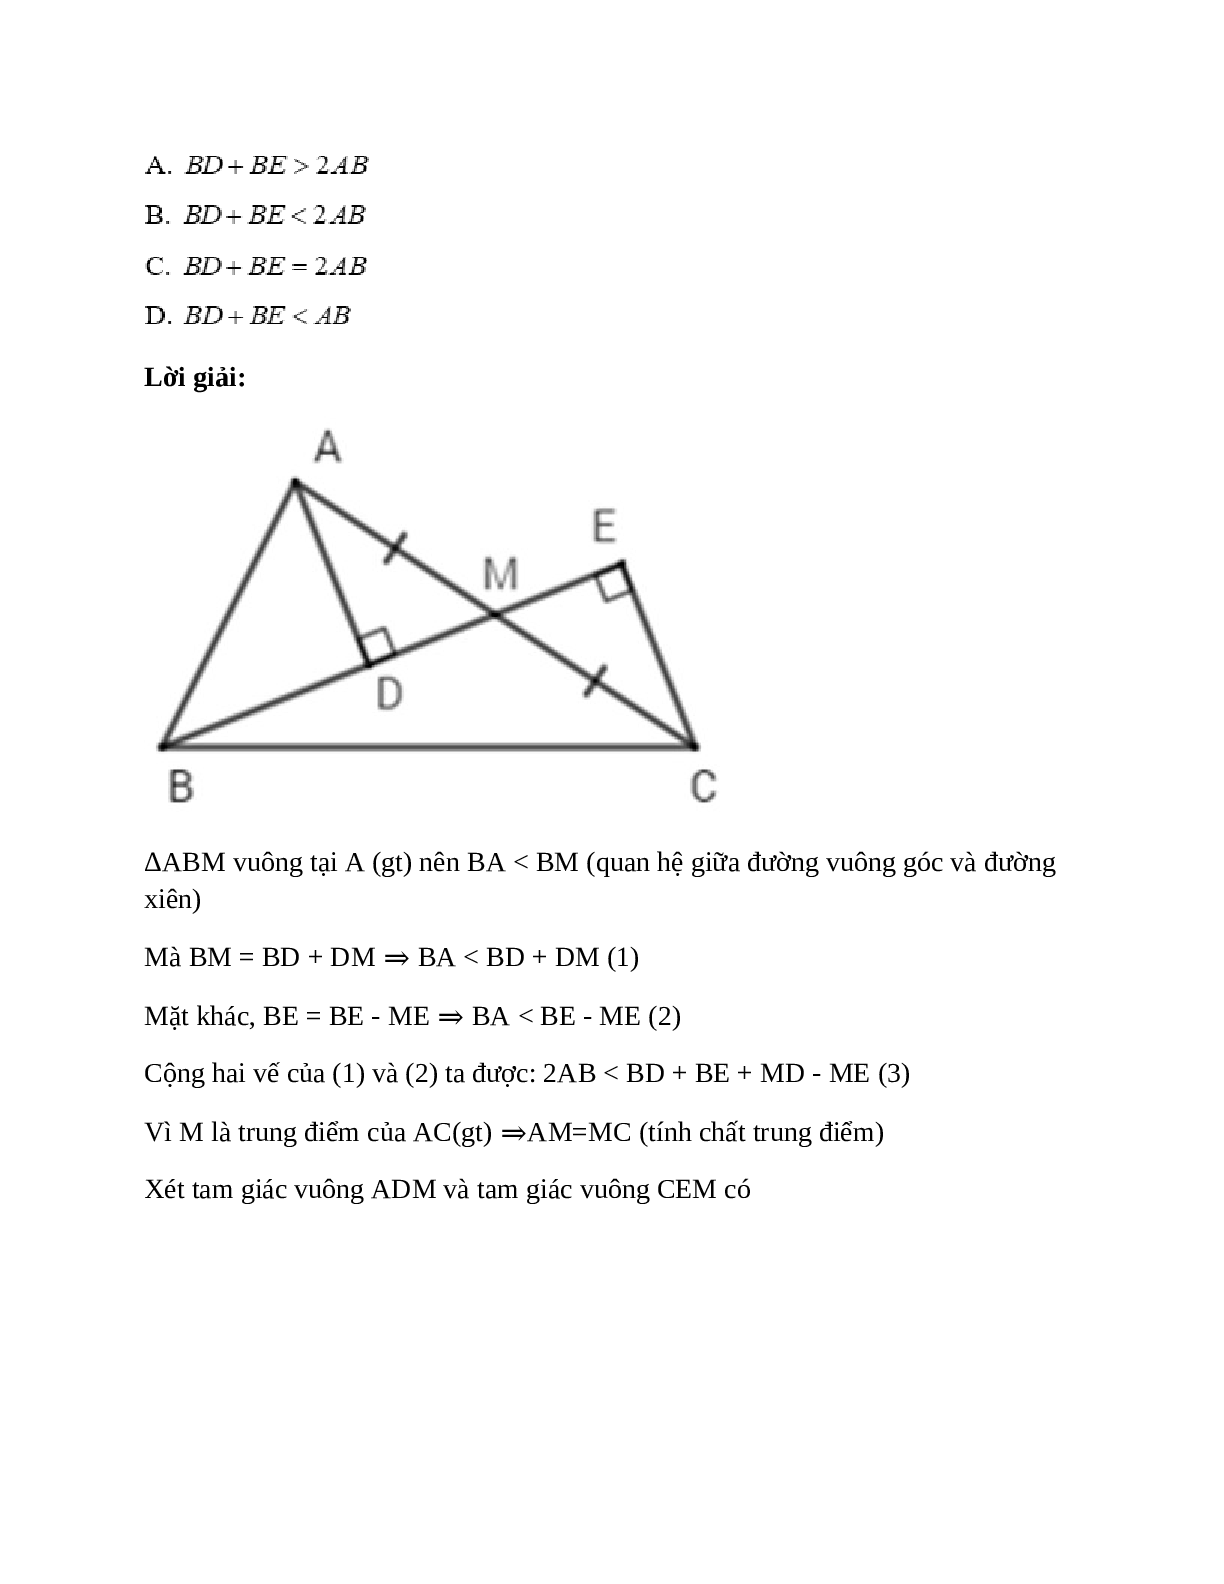 Trắc nghiệm Quan hệ giữa đường vuông góc và đường xiên đường xiên và hình chiếu có đáp án – Toán lớp 7 (trang 5)